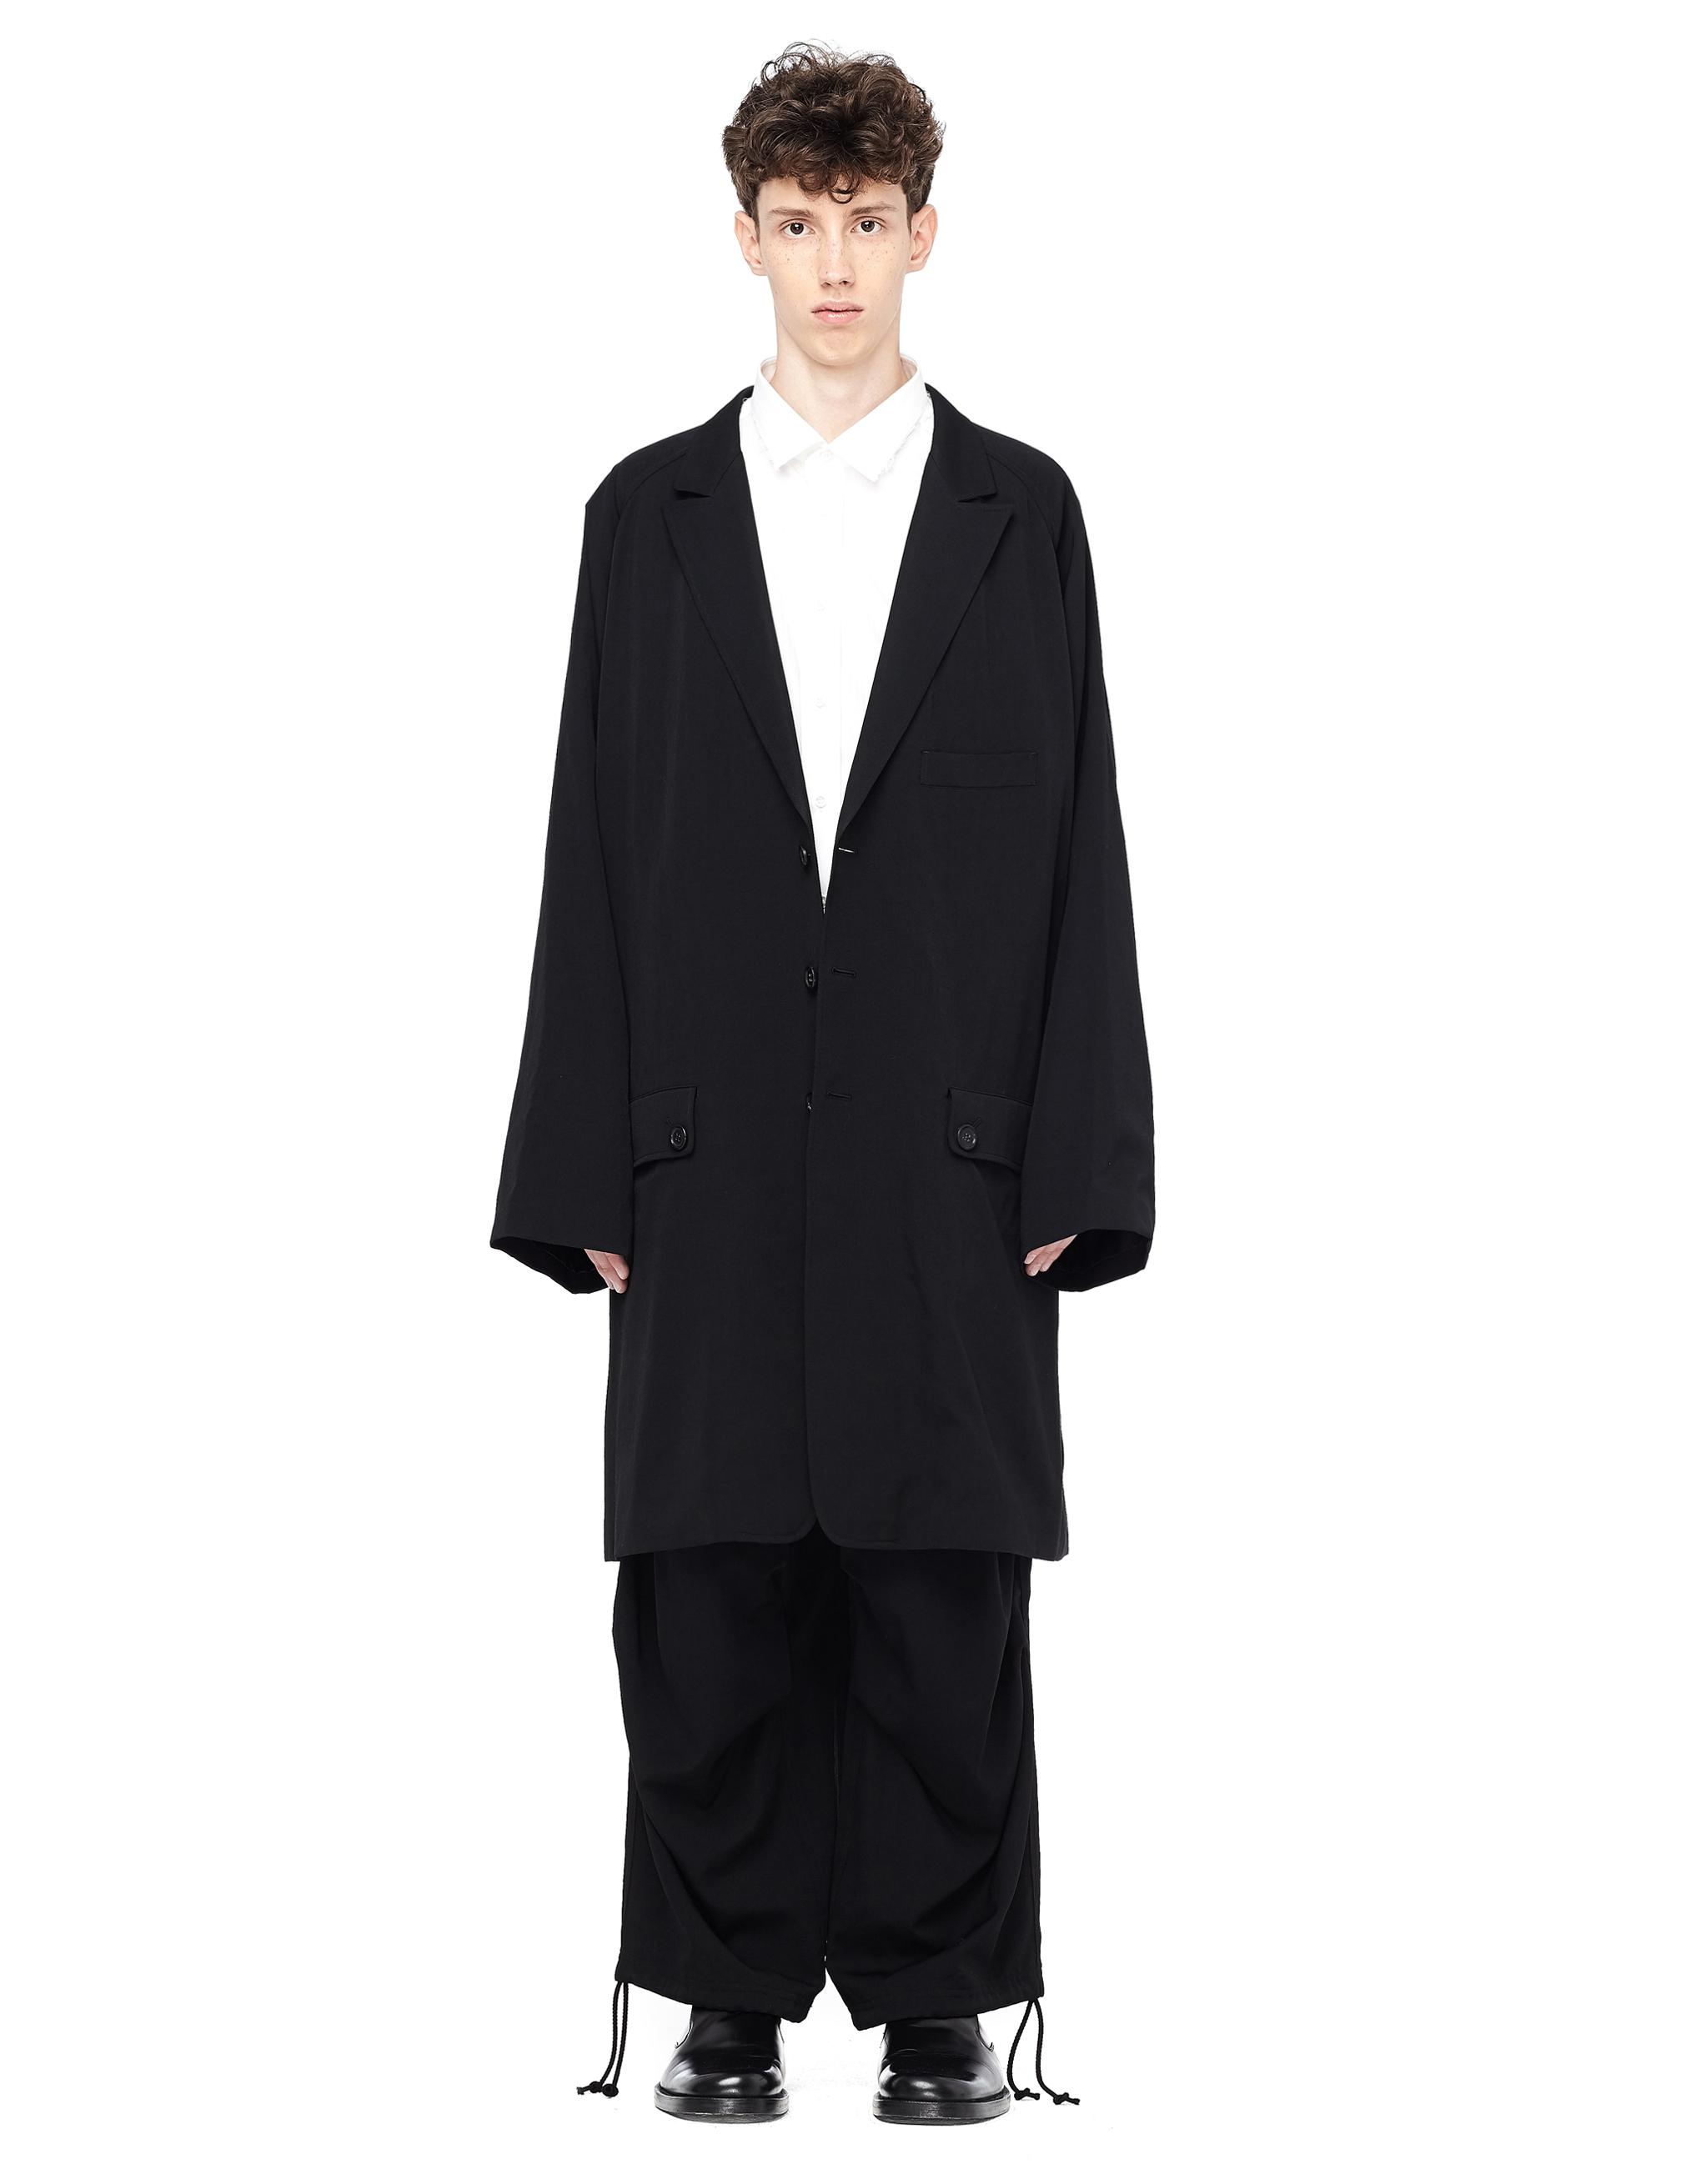 Yohji Yamamoto Wool Printed Coat in Black for Men - Lyst